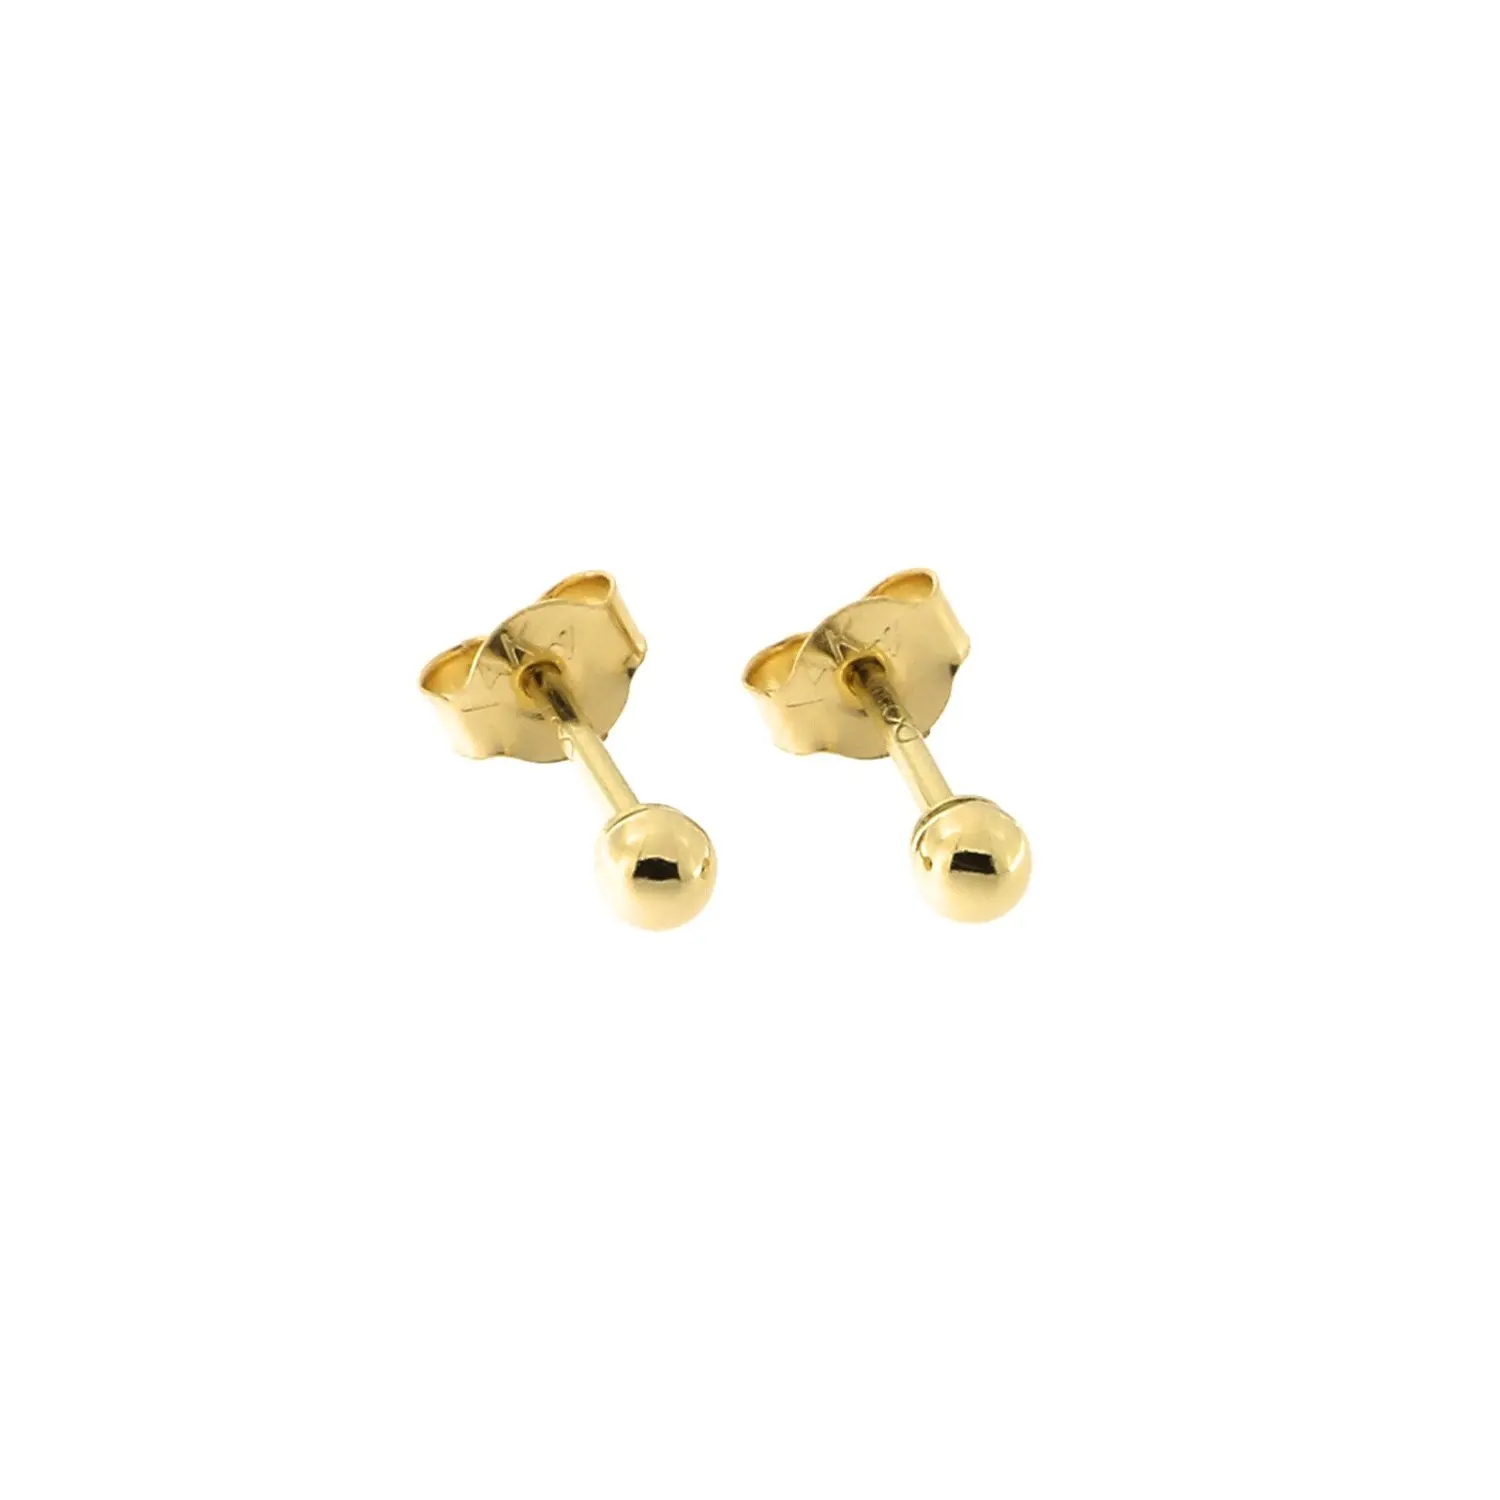 24 karat gold earrings studs